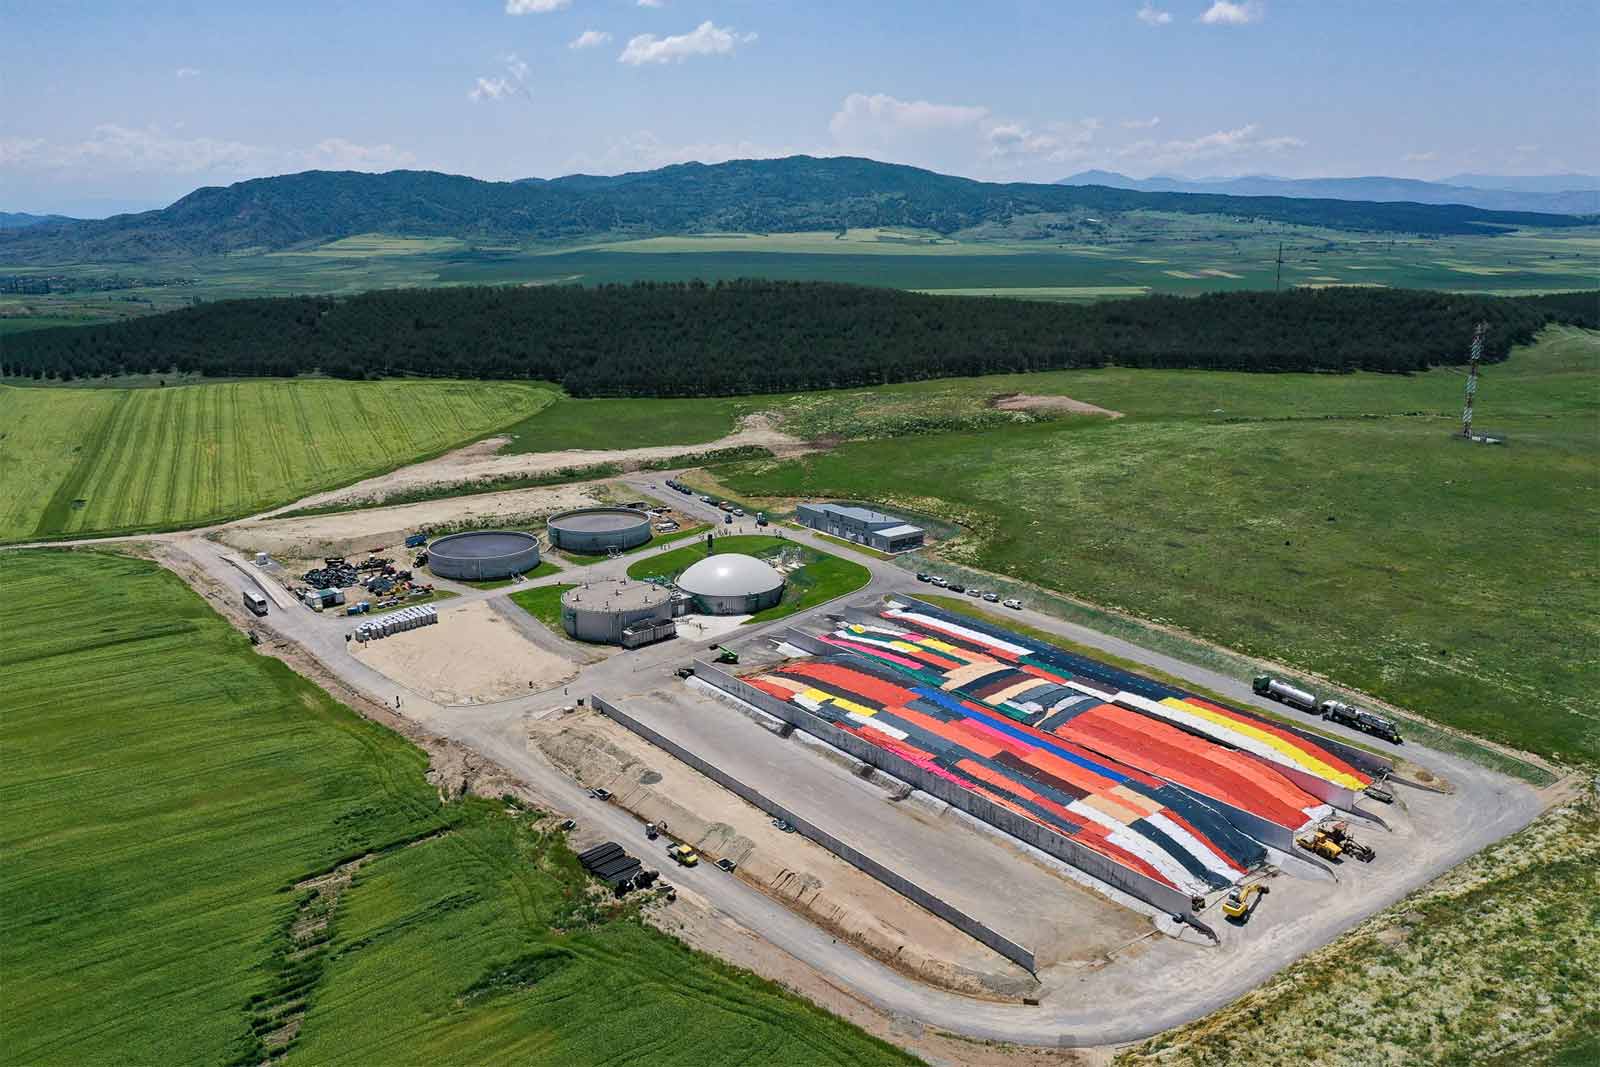 Новая биогазовая электростанция с двумя газовыми двигателями MWM TCG 2020 V12 суммарной мощностью 2 МВт обеспечивает энергией 4 тыс. домохозяйств в Северной Македонии